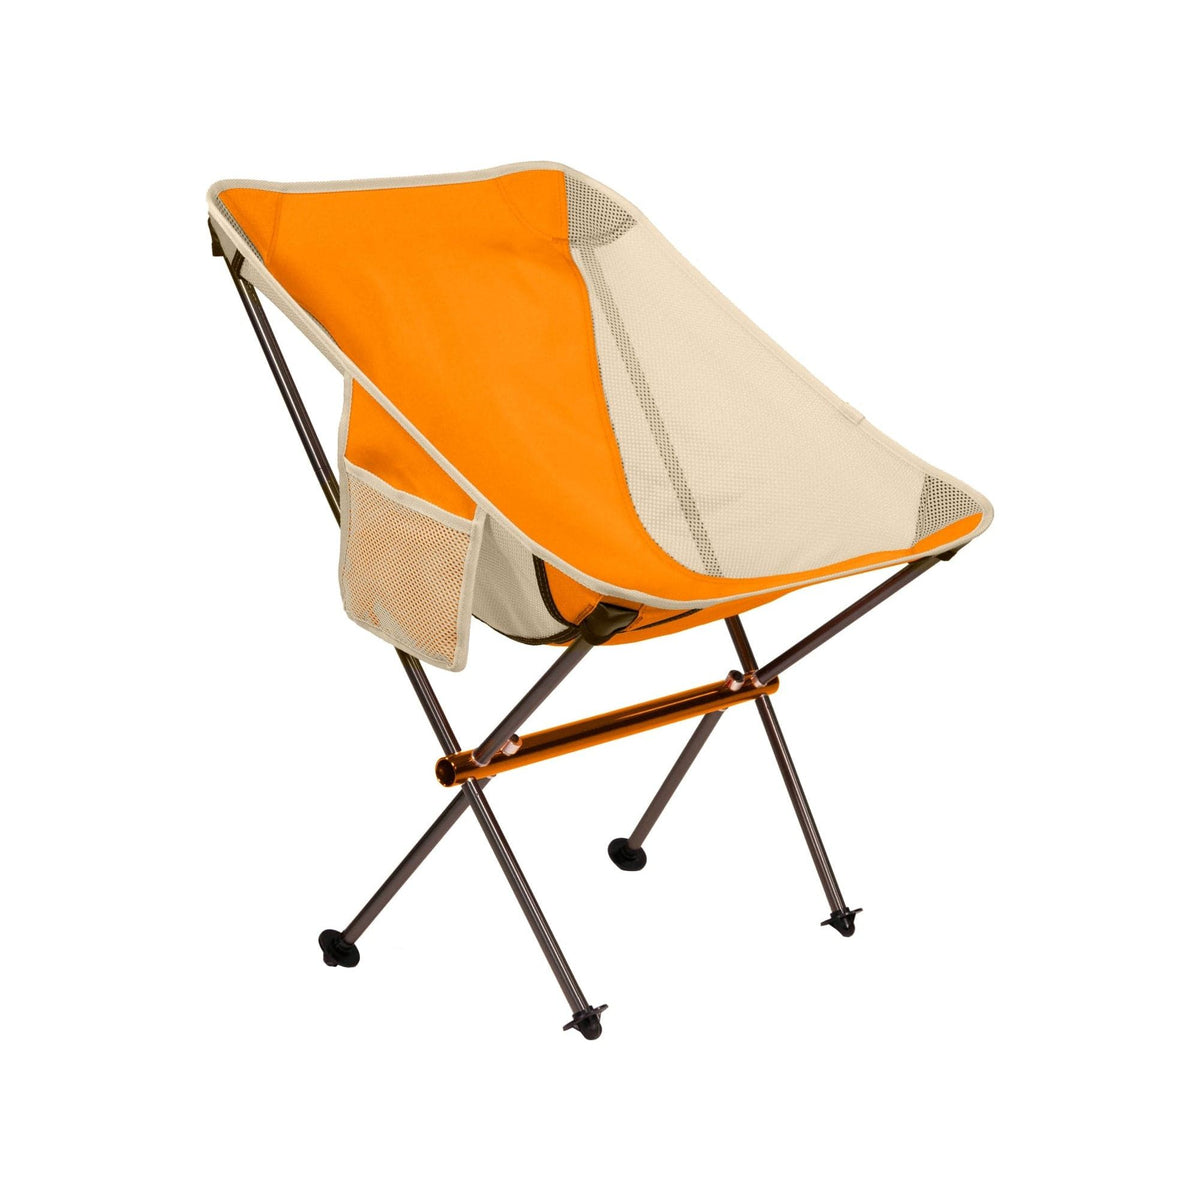 Klymit Orange Ridgeline Camp Chair Short by Klymit